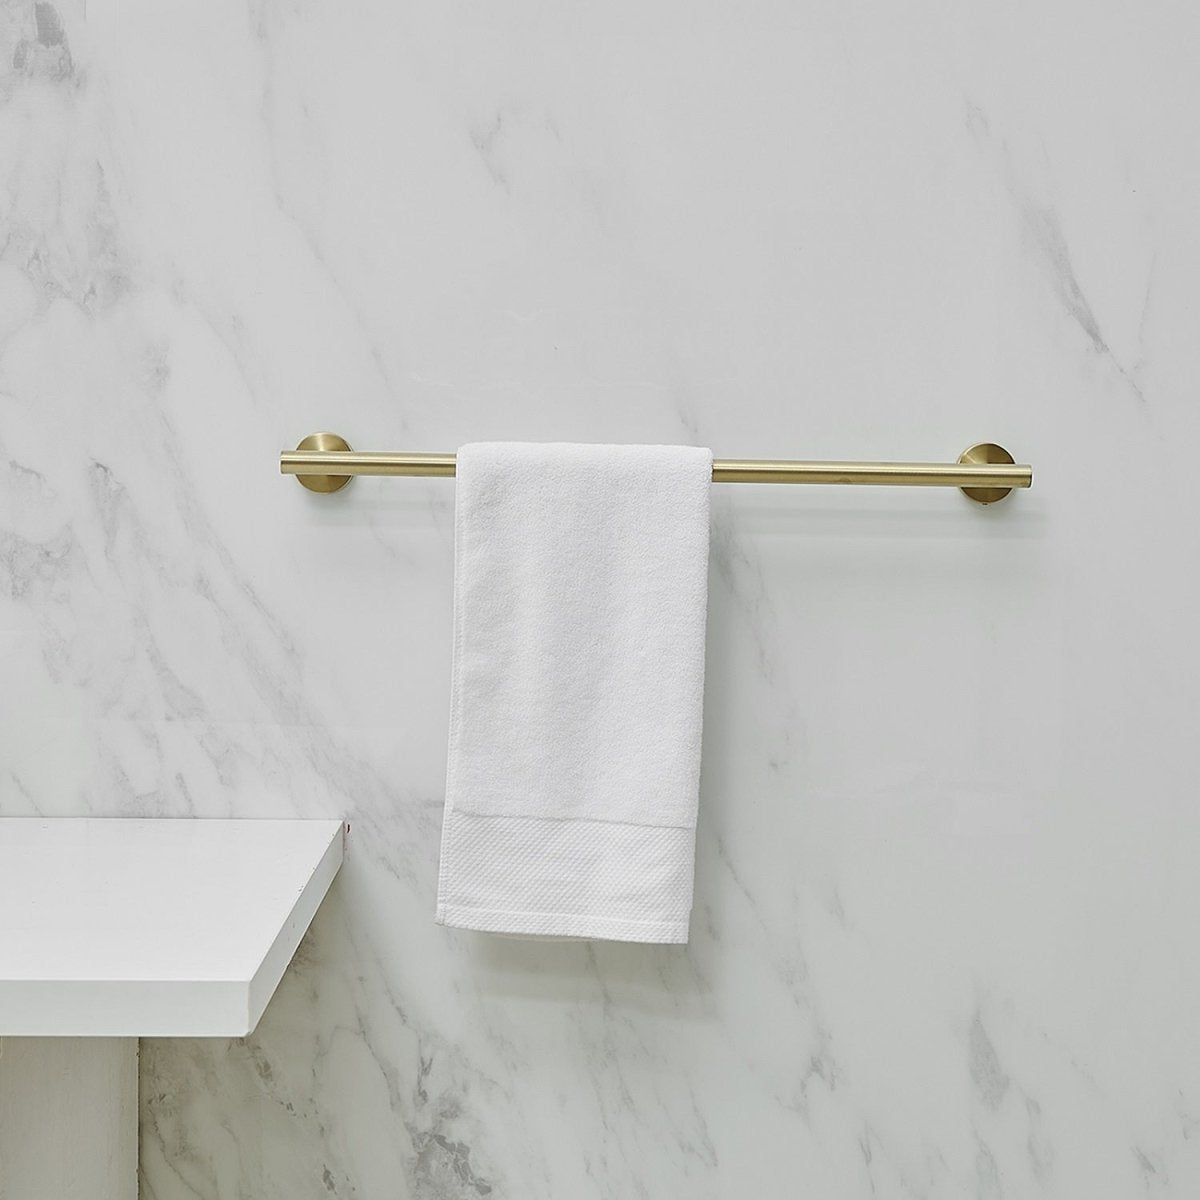 5 PCS Towel Bar Towel Hook Paper Holder Towel Ring Set Gold - buyfaucet.com